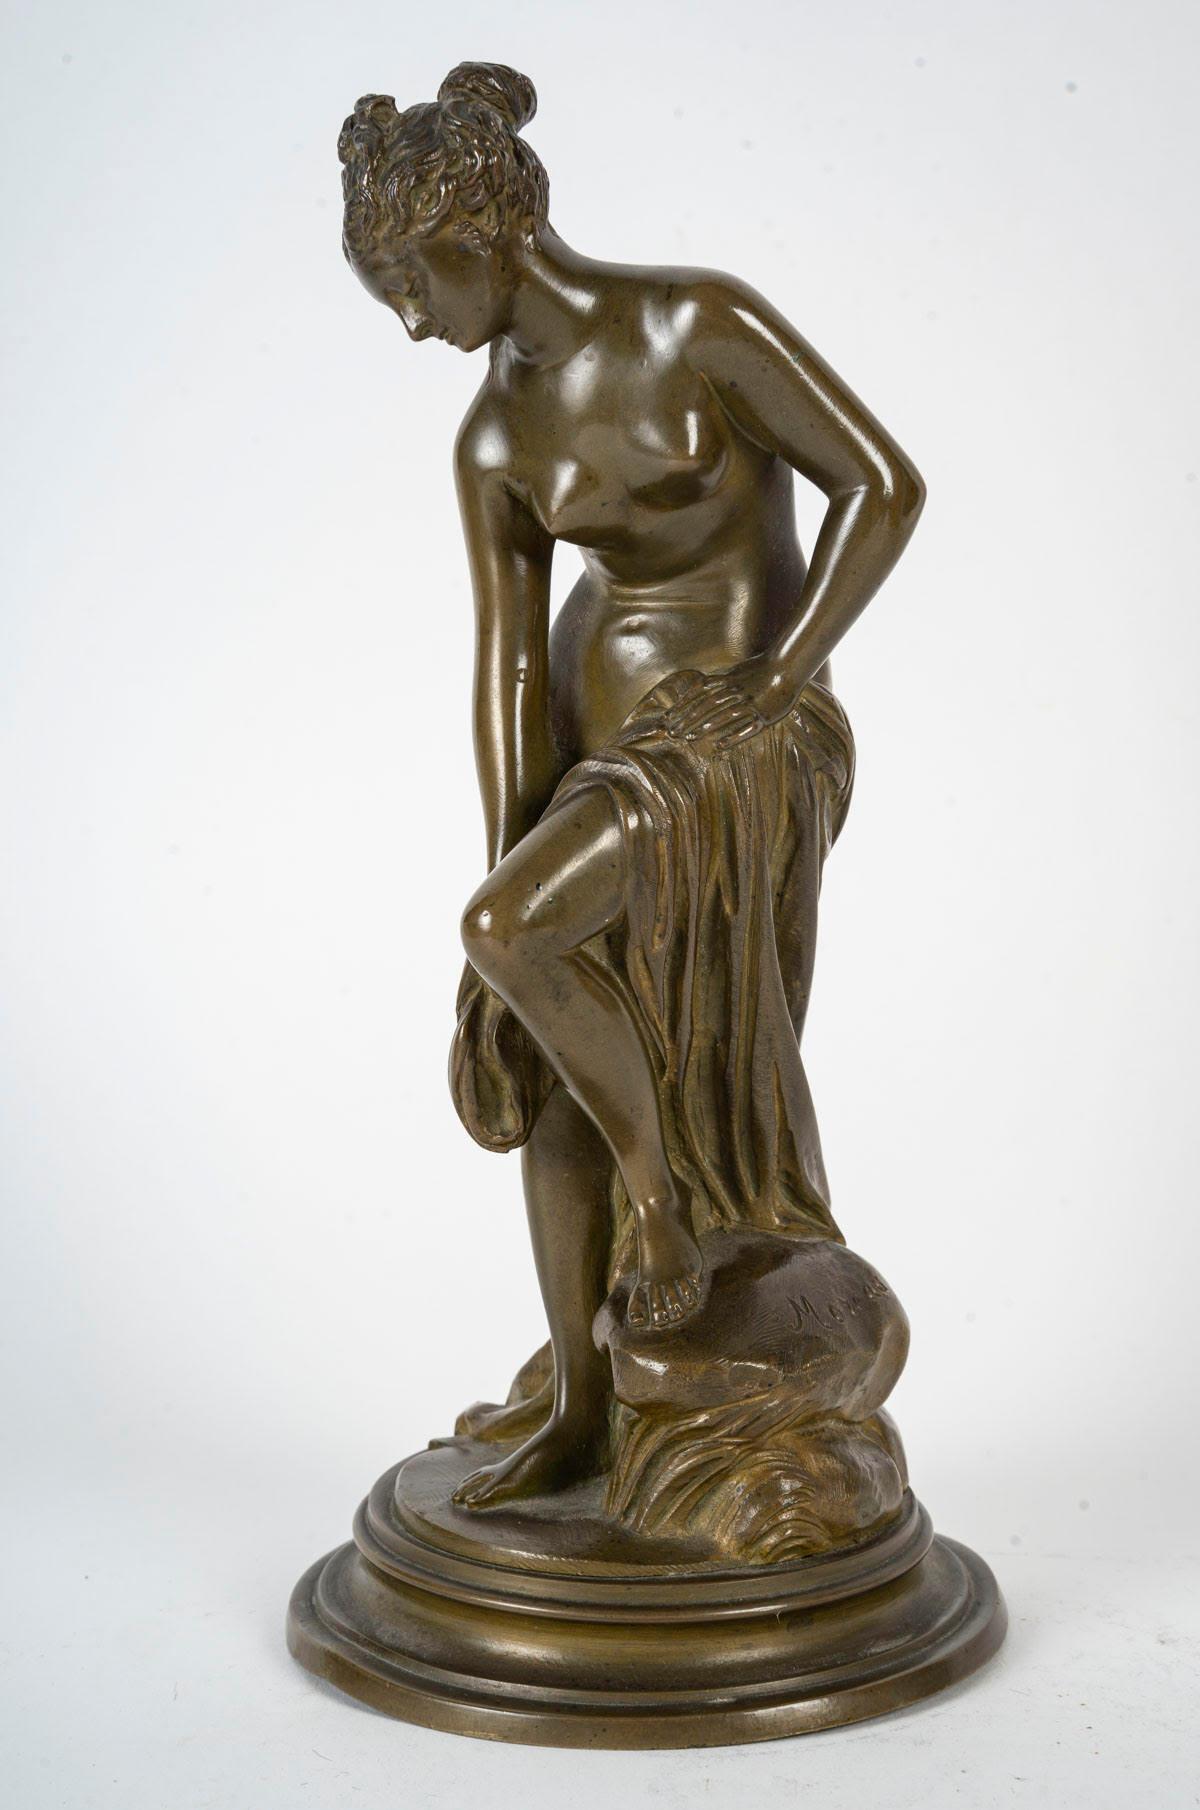 Sculpture en bronze signée Moreau, époque Napoléon III, XIXe siècle.

Sculpture en bronze patiné signée Moreau, XIXe siècle, époque Napoléon III.
H : 25cm, p : 11.5cm